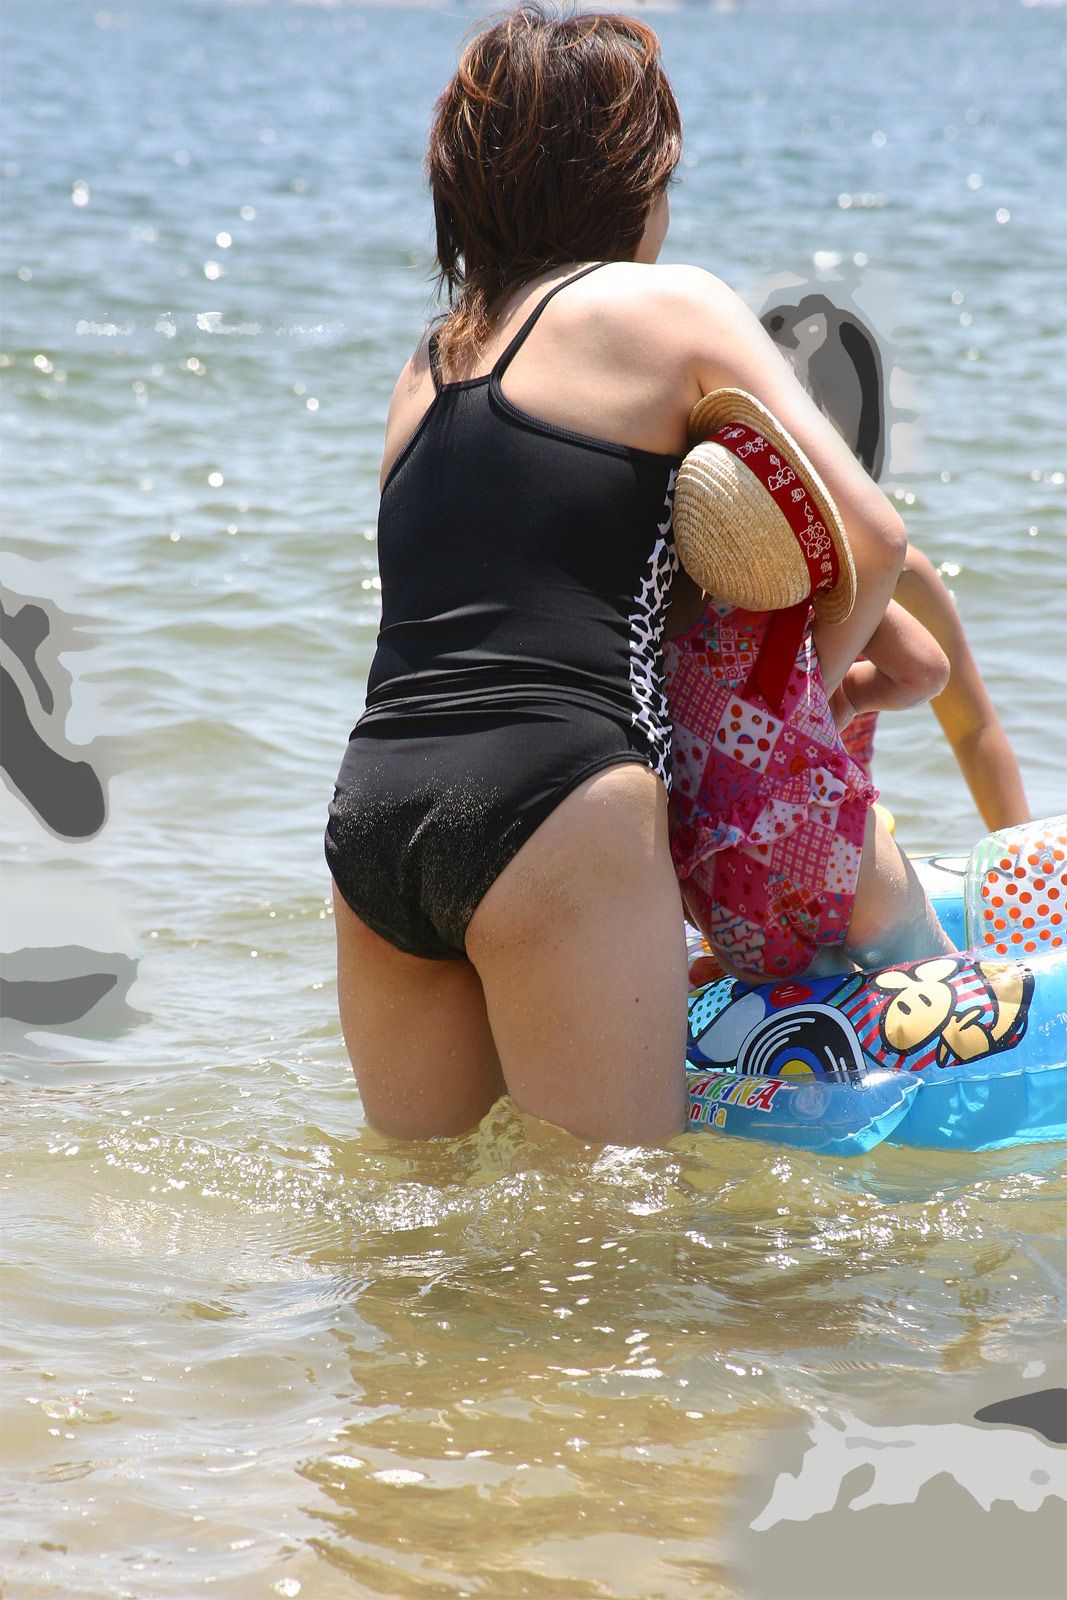 おばさんと泳ぎたい 熟女 人妻 ヤンママの水着画像集 性癖エロ画像 センギリ